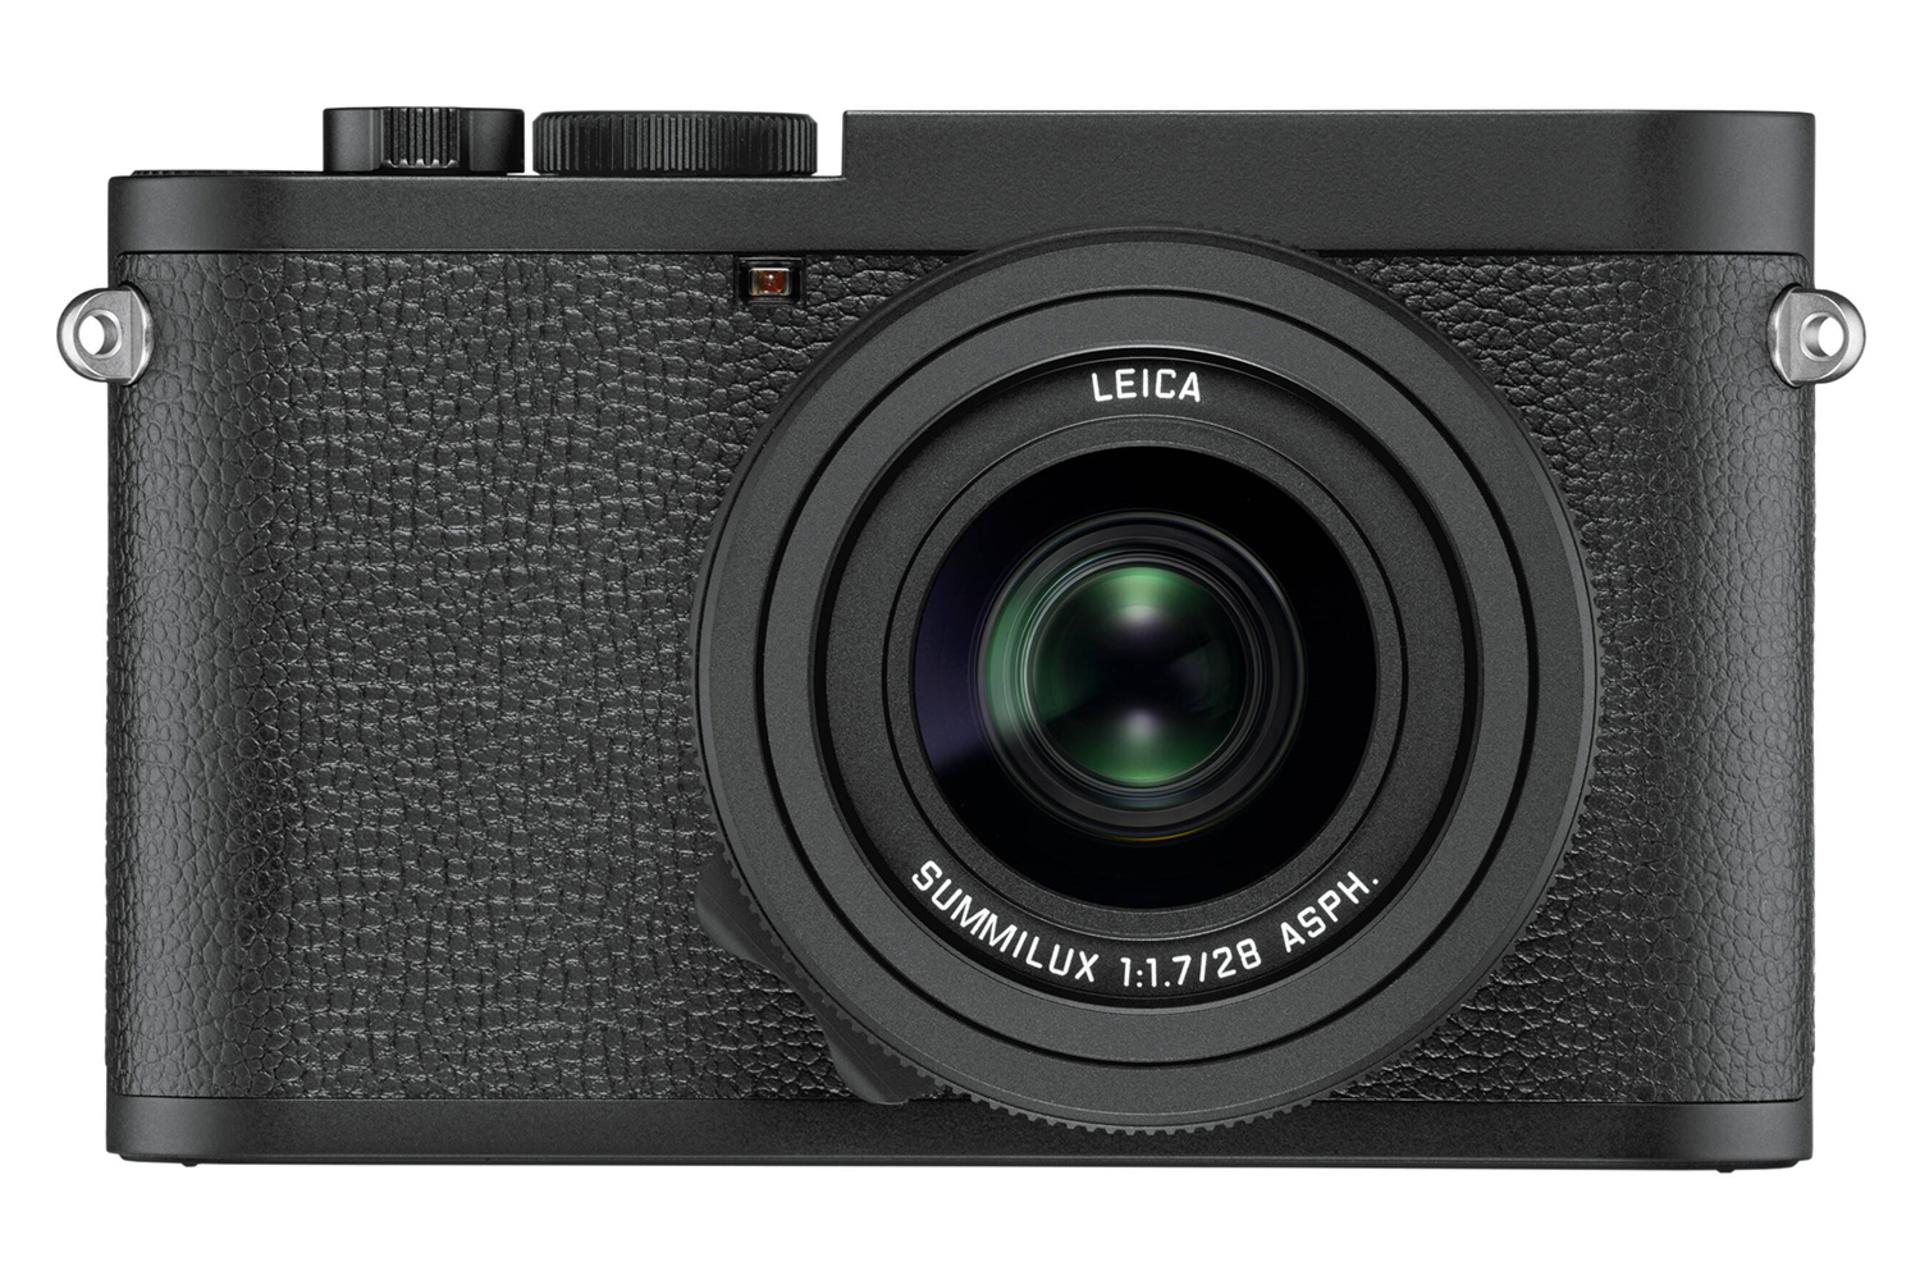 مرجع متخصصين ايران نماي جلو دوبين لايكا Q2 مونوكروم / Leica Q2